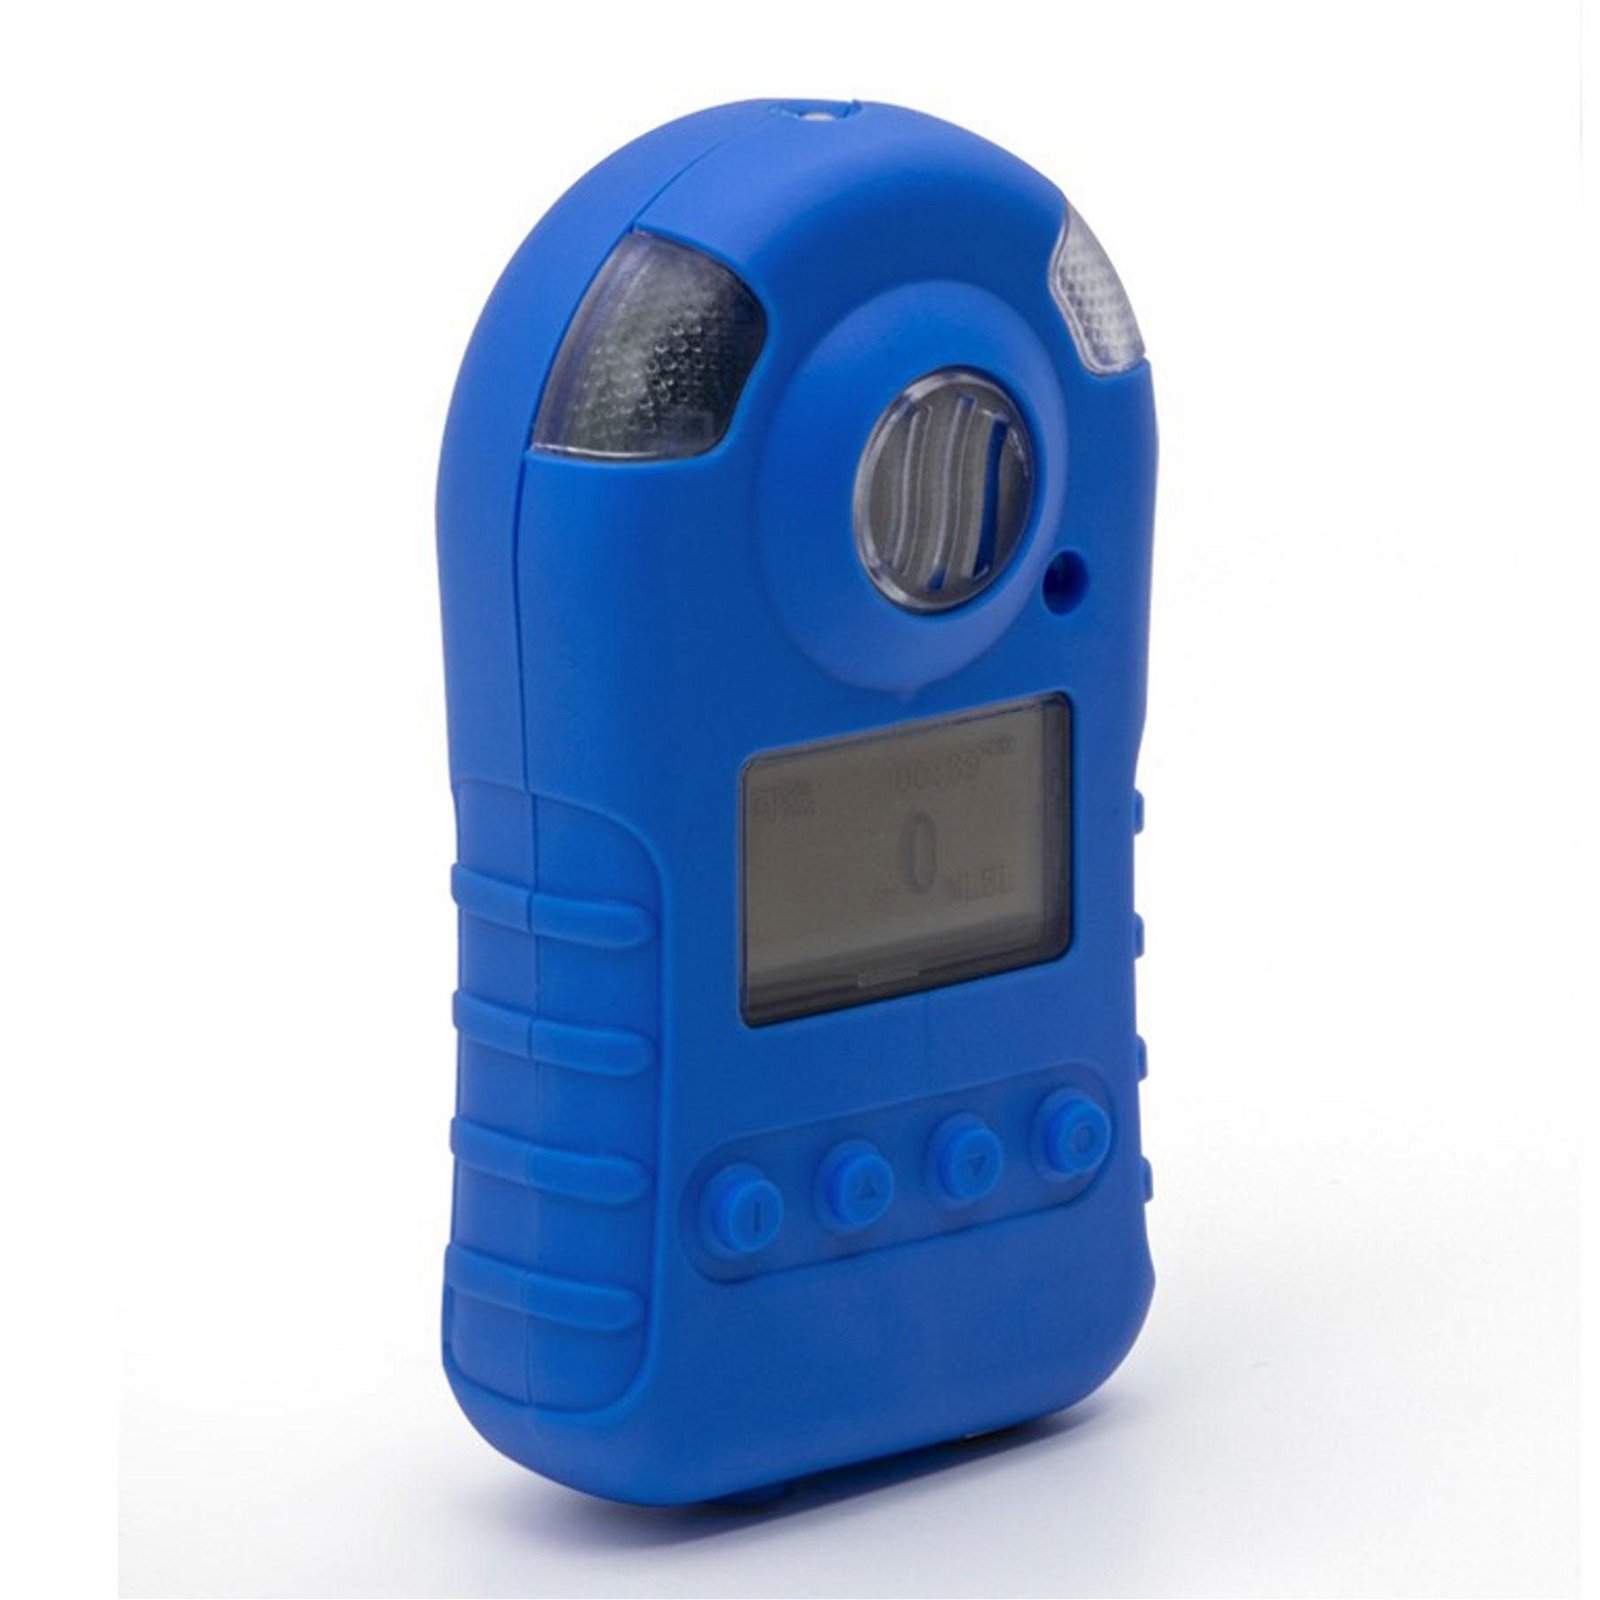 Portable CO Gas Detector BH-90 Industrial Carbon monoxide Gas Alarm detector 3